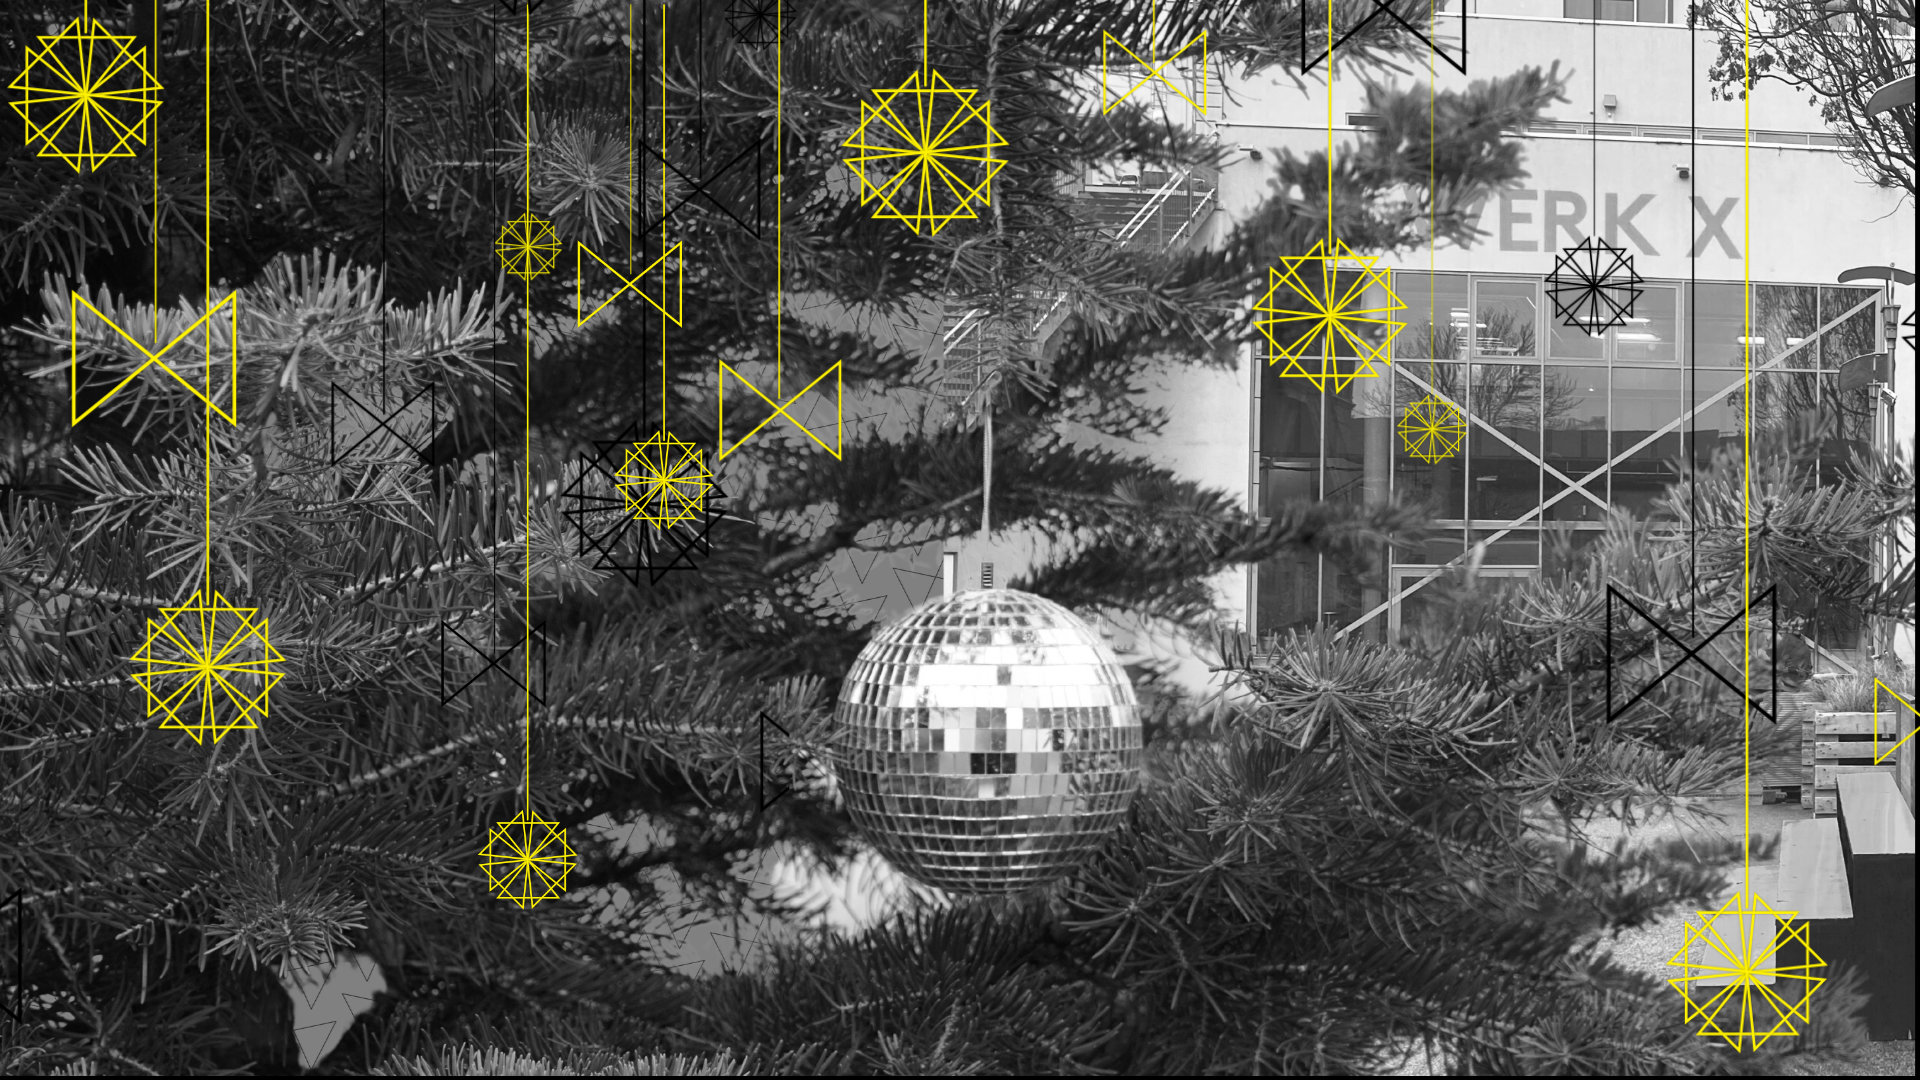 Ein schwarzweißes Foto. Eine kleine Discokugel hängt an einem Tannenzweig und erinnert so an eine Weihnachtskugel, im Hintergrund ist das WERK X erkennbar. Das WERK X-Logo wurde zusätzlich grafisch als Christbaumschmuck arrangiert und am Tannenbaum platziert.